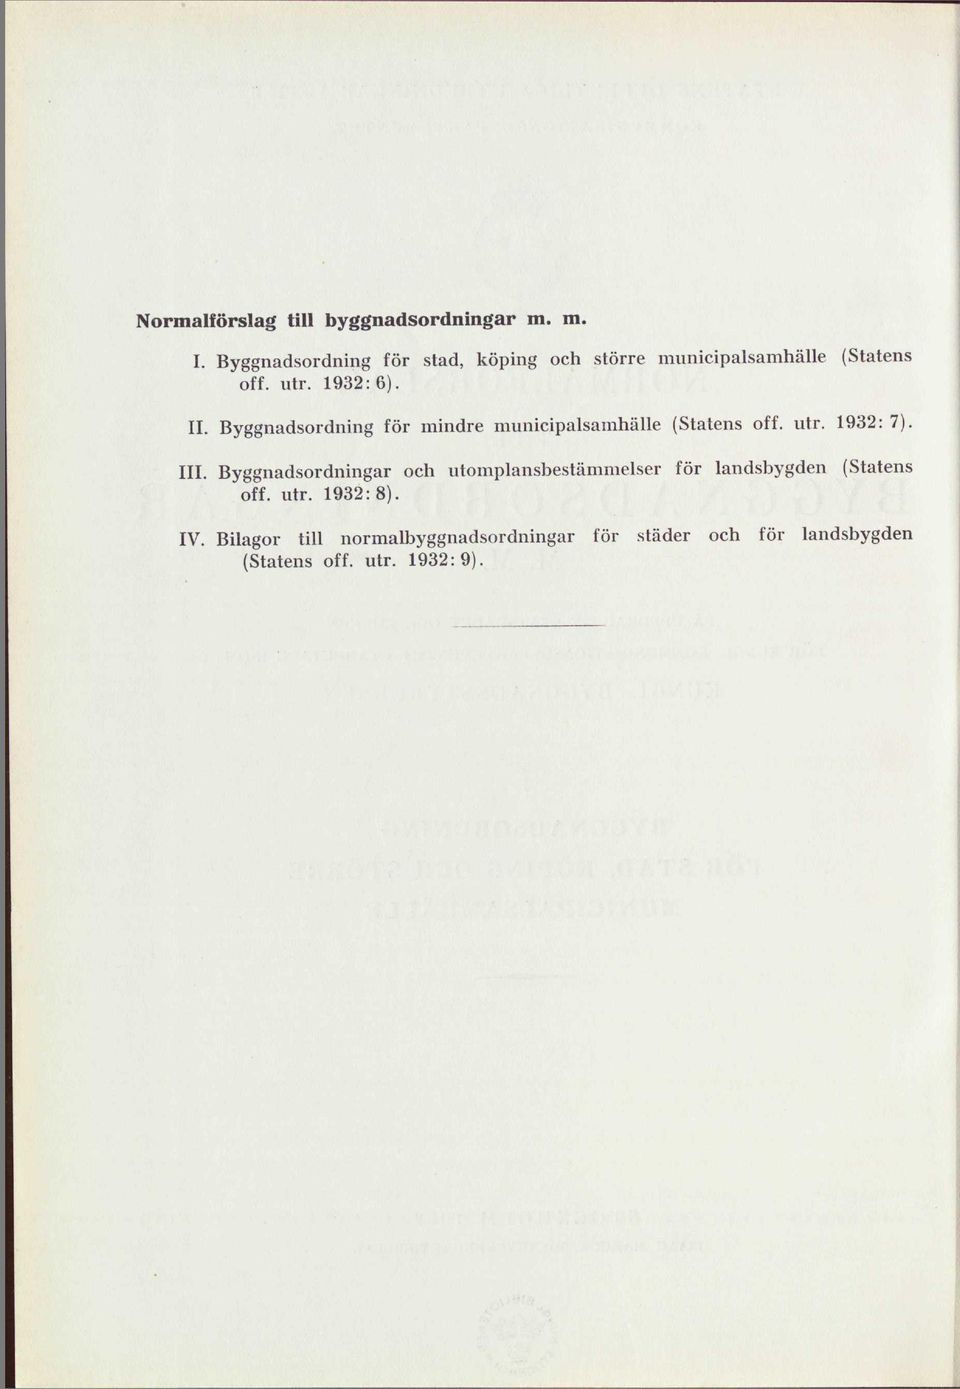 Byggnadsordning för mindre mnnicipalsamhälle (Statens off. utr. 1932: 7). III.